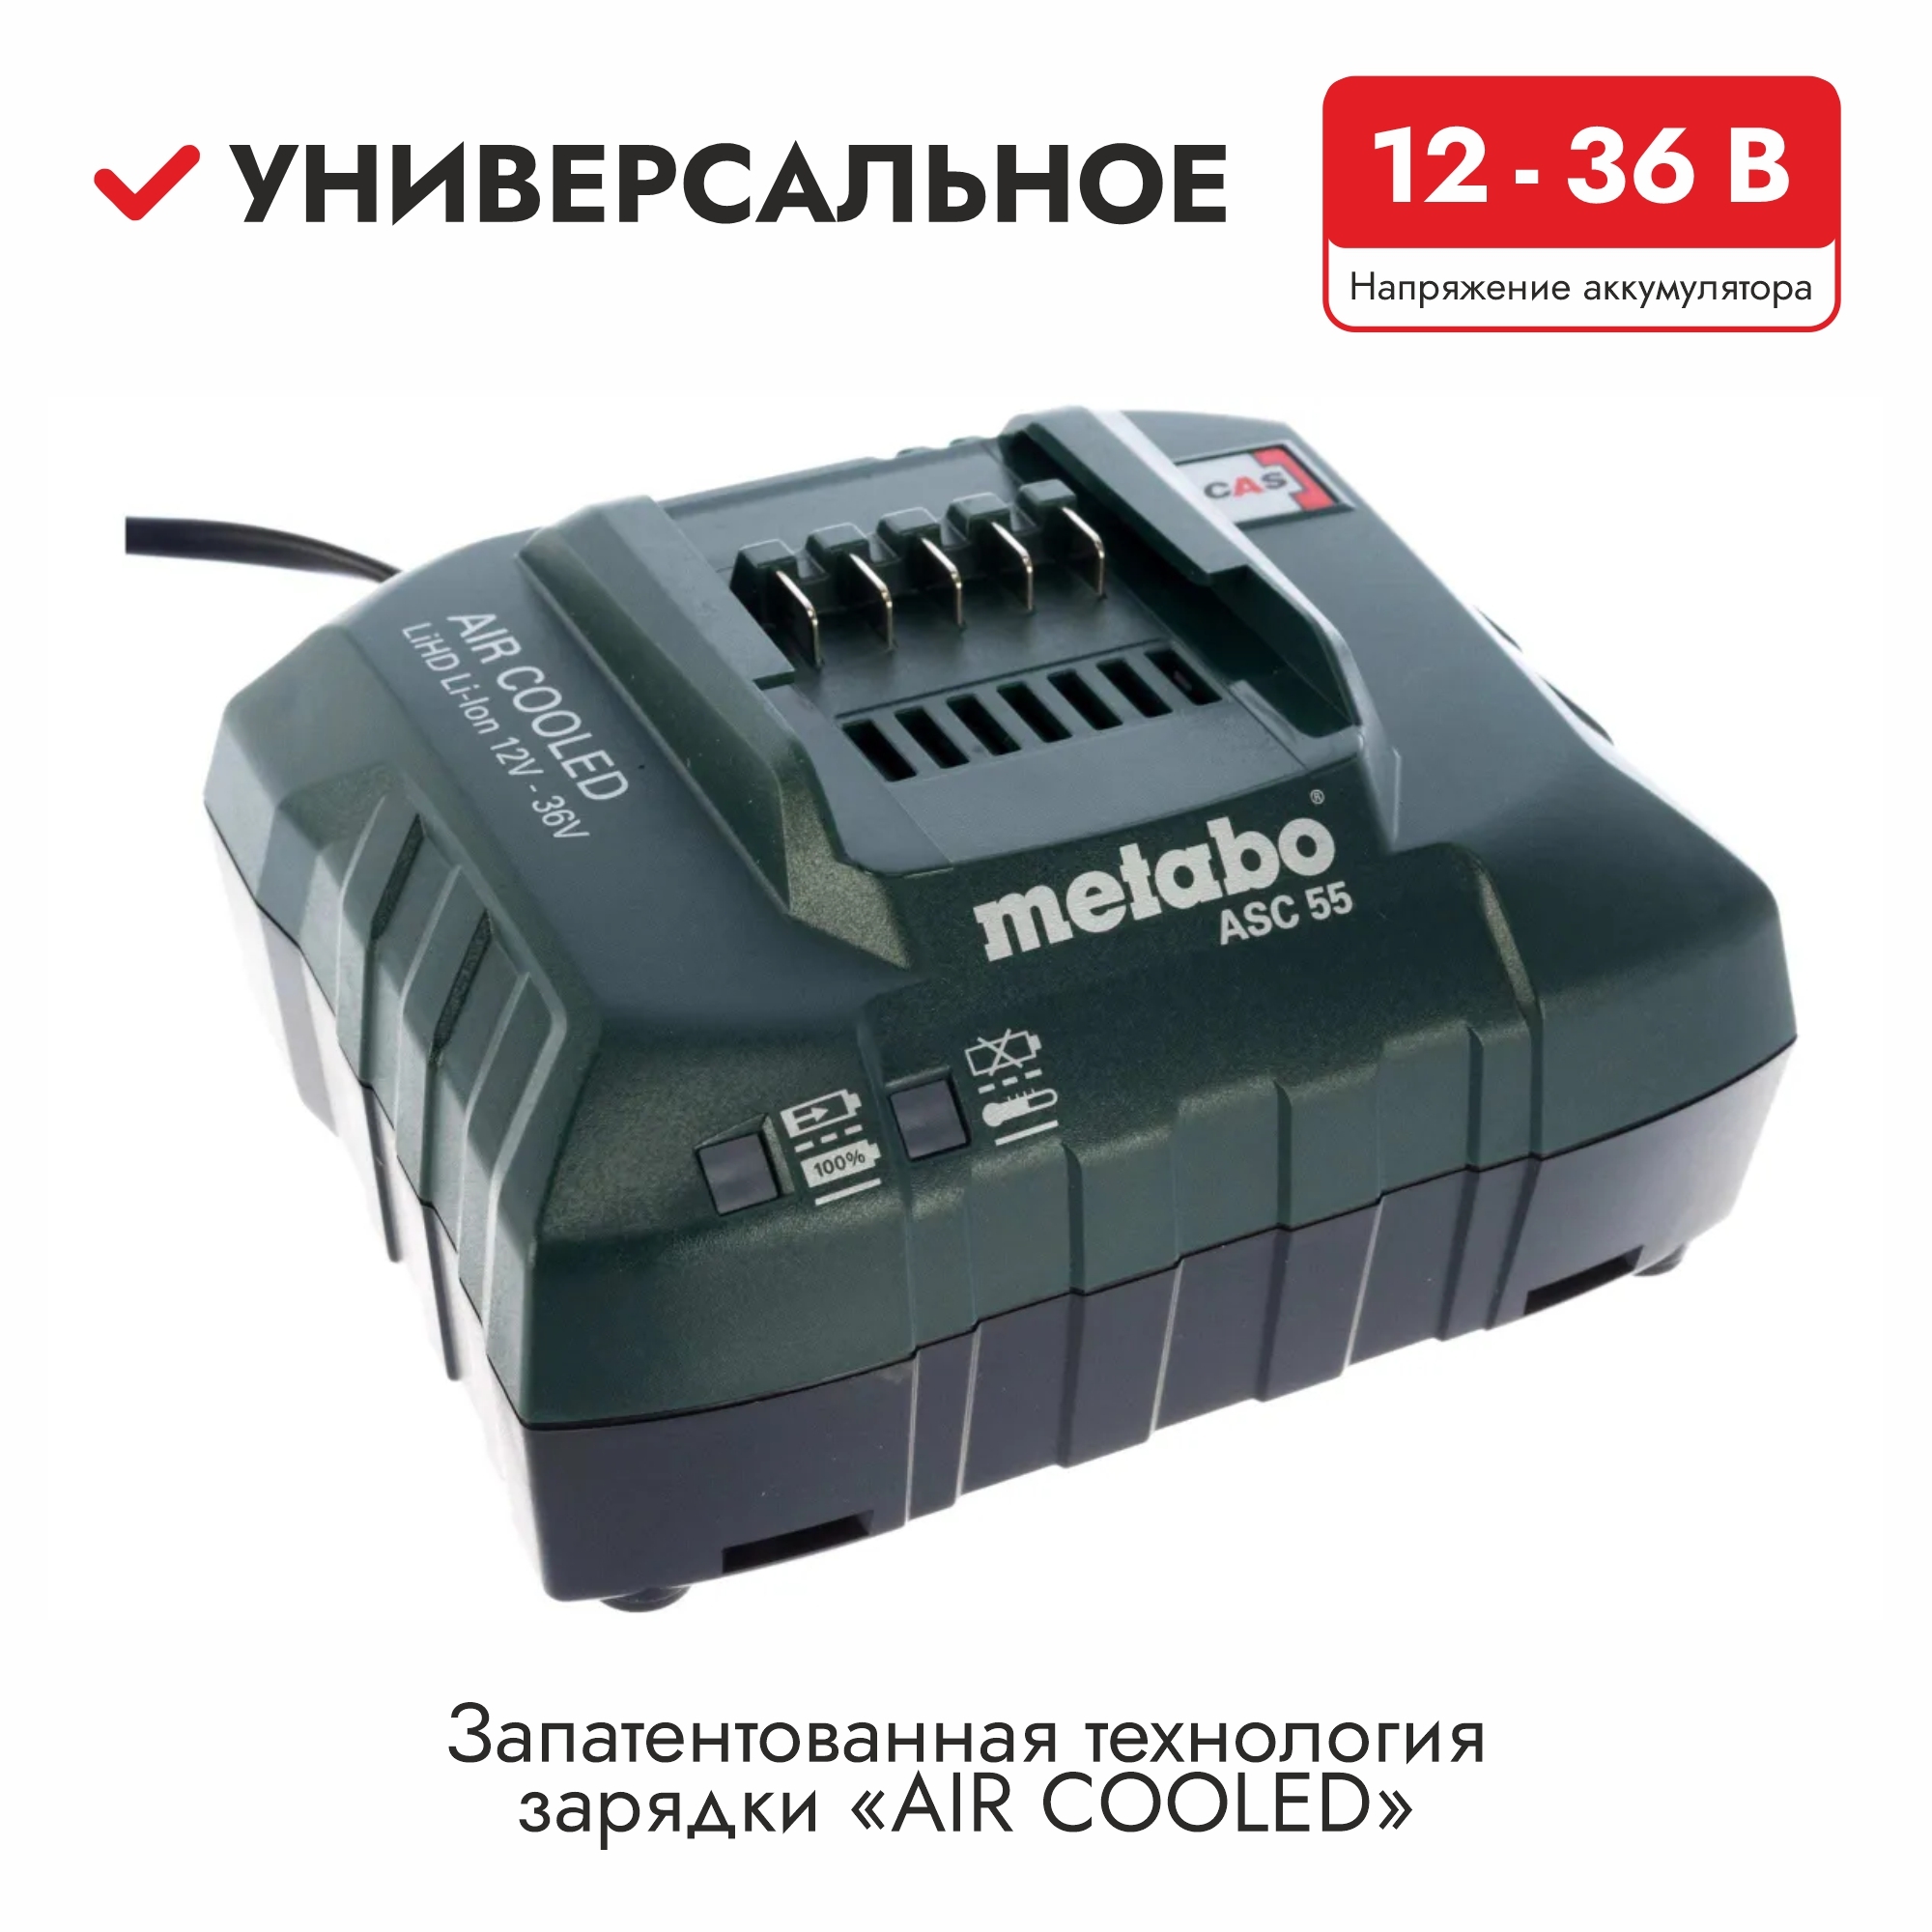 Зарядное устройство метабо. ASC 55 Metabo. Устройство зарядное ASC 55, 12-36 В «Air cooled» Metabo 627044000. Metabo ASC Multi 8, 14,4-36 v Air cooled. Зарядное устройство Metabo Air cooled ASC 55 12-36v.